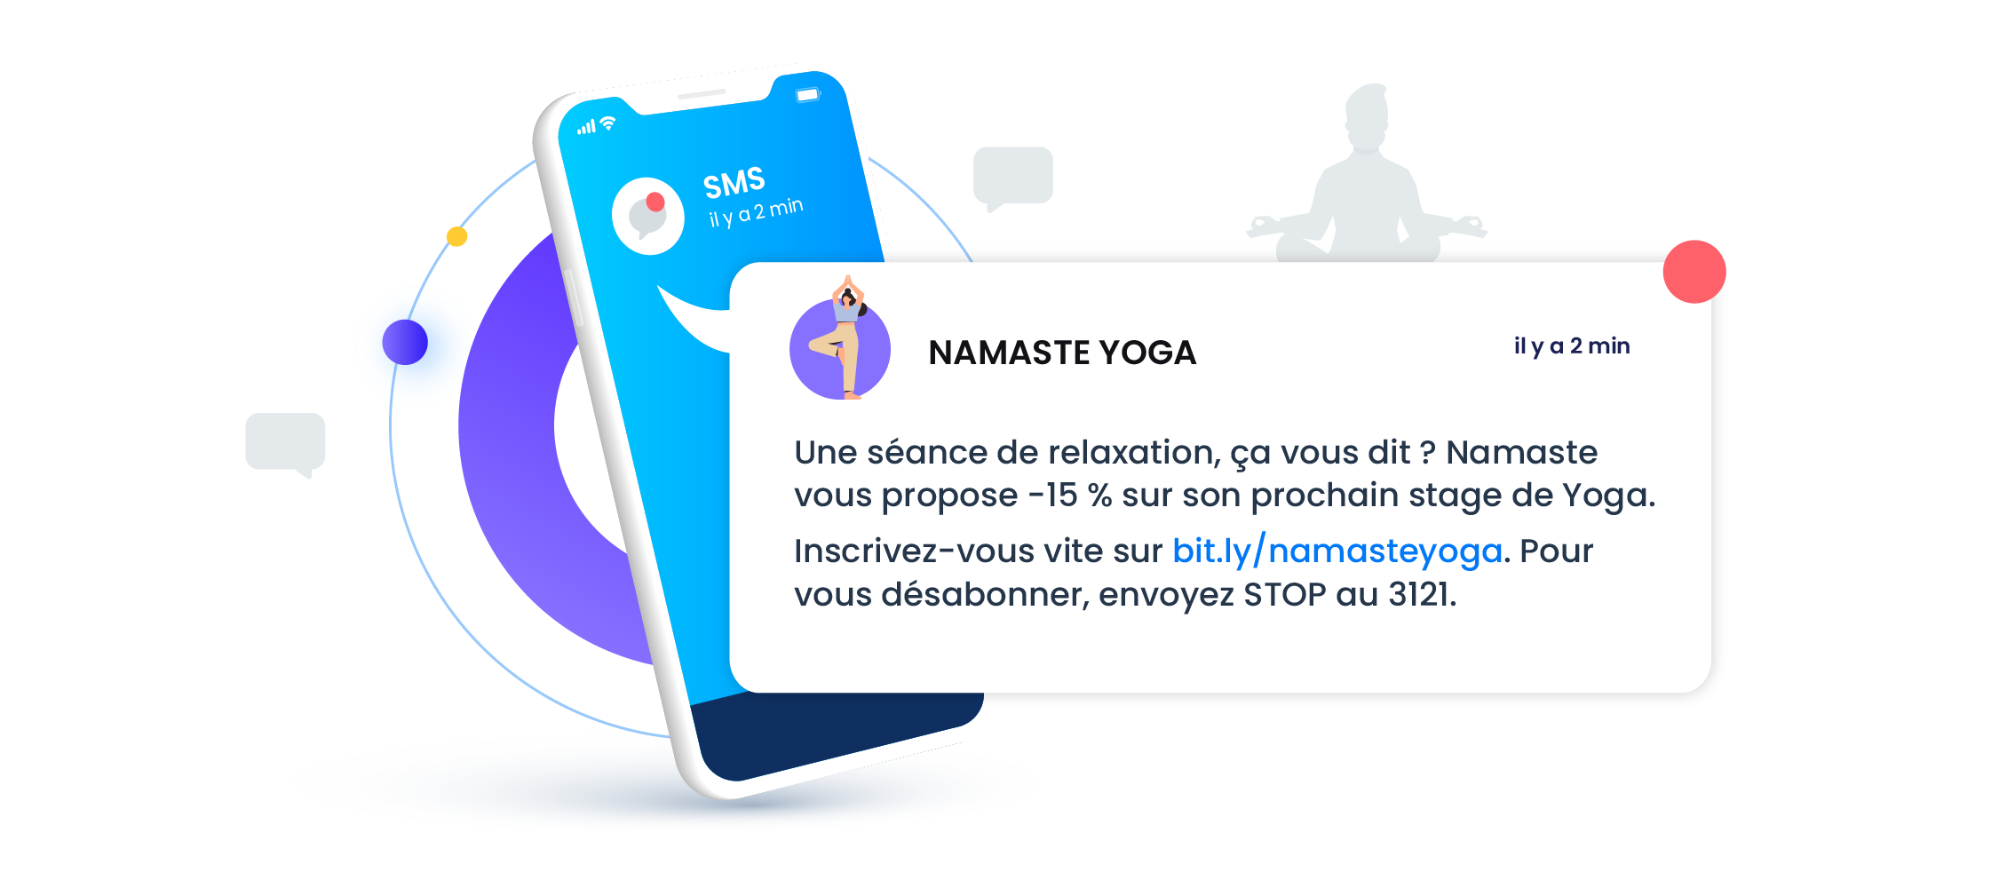 SMS - Namaste